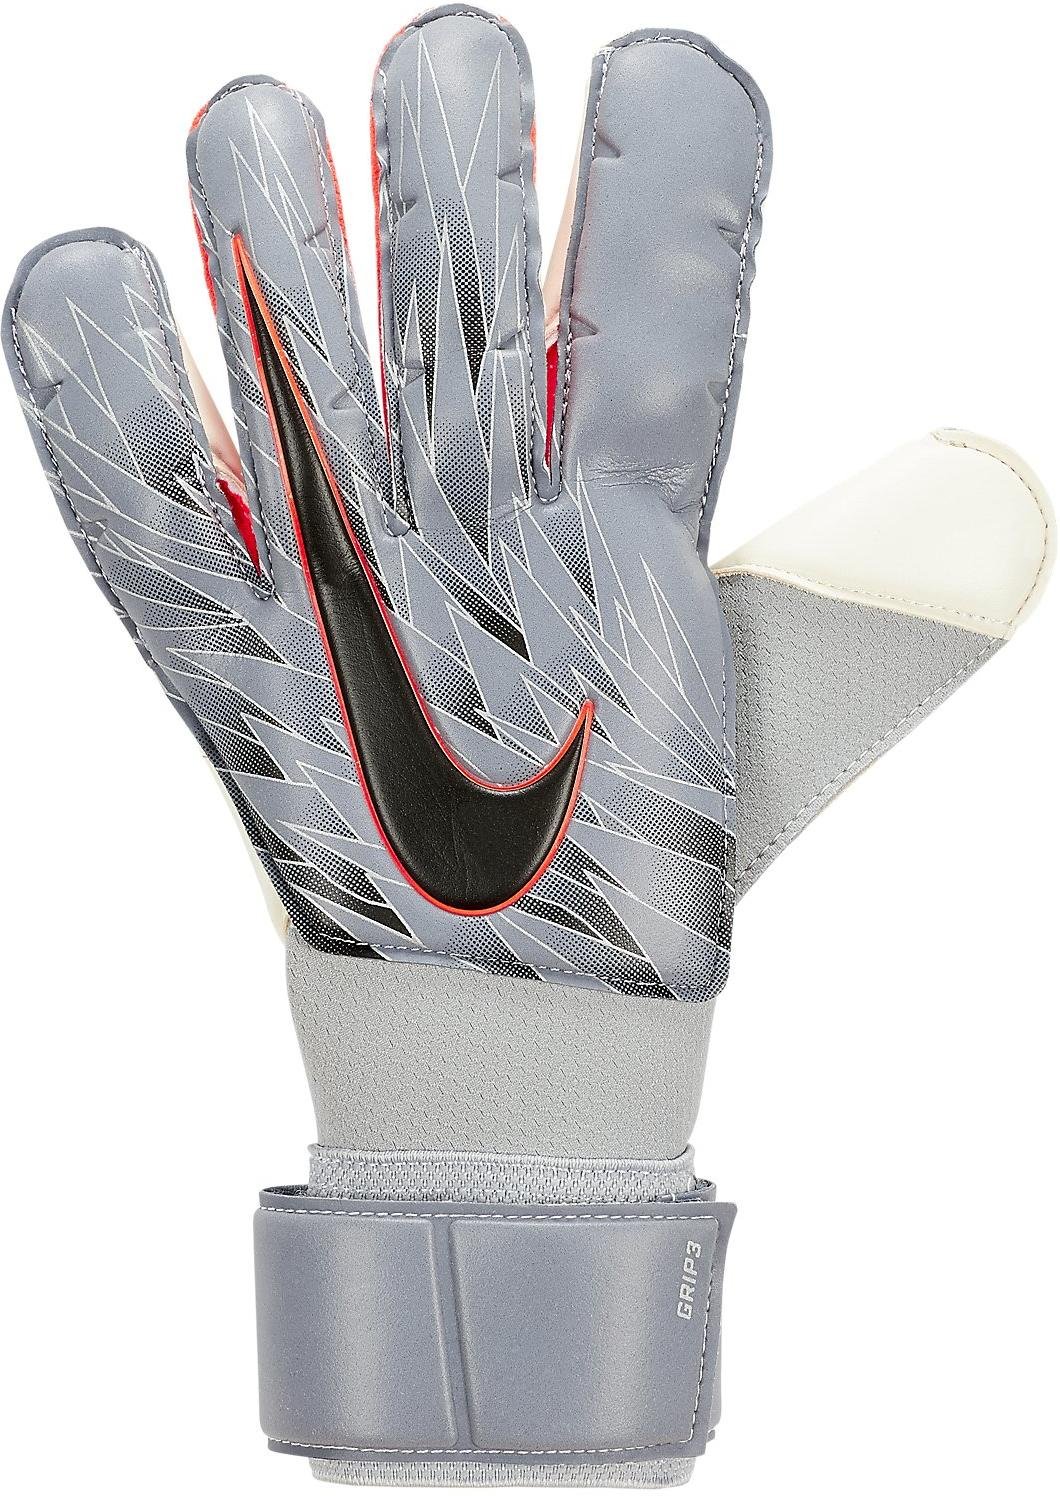 Goalkeeper's gloves Nike NK GK GRP3-SU19